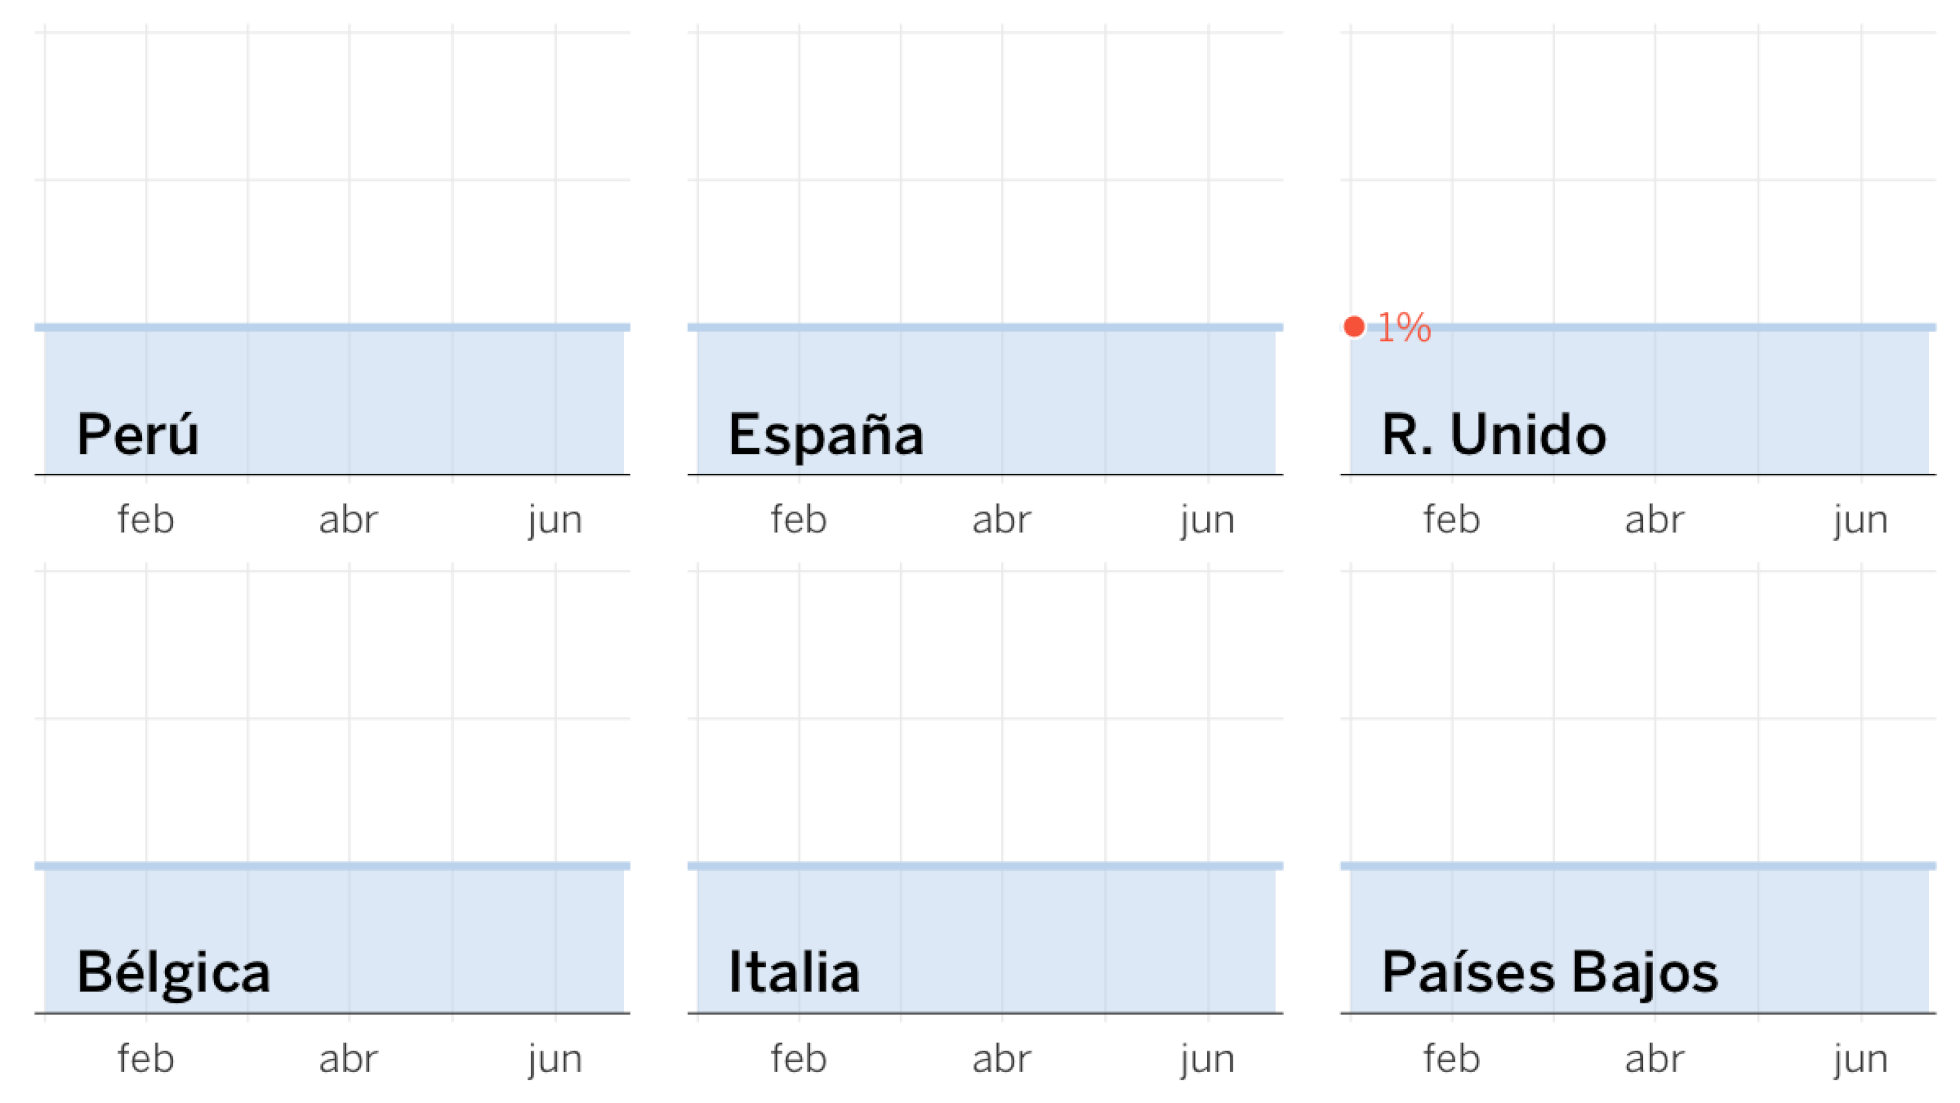 Datos del exceso de fallecidos por país, según los registros civiles. Las líneas en rojo representan las <span style="color:#de2d26;font-weight:500">muertes observadas</span> y el área azul la <b style="background:#c6dbef;padding:1px 4px;font-weight:300">normalidad</b>. Los <strong><a href="https://elpais.com/sociedad/2020-06-05/espana-es-el-pais-con-el-segundo-mayor-exceso-de-muertes-durante-la-crisis-del-coronavirus.html">detalles pueden leerse en este artículo</a></strong>.